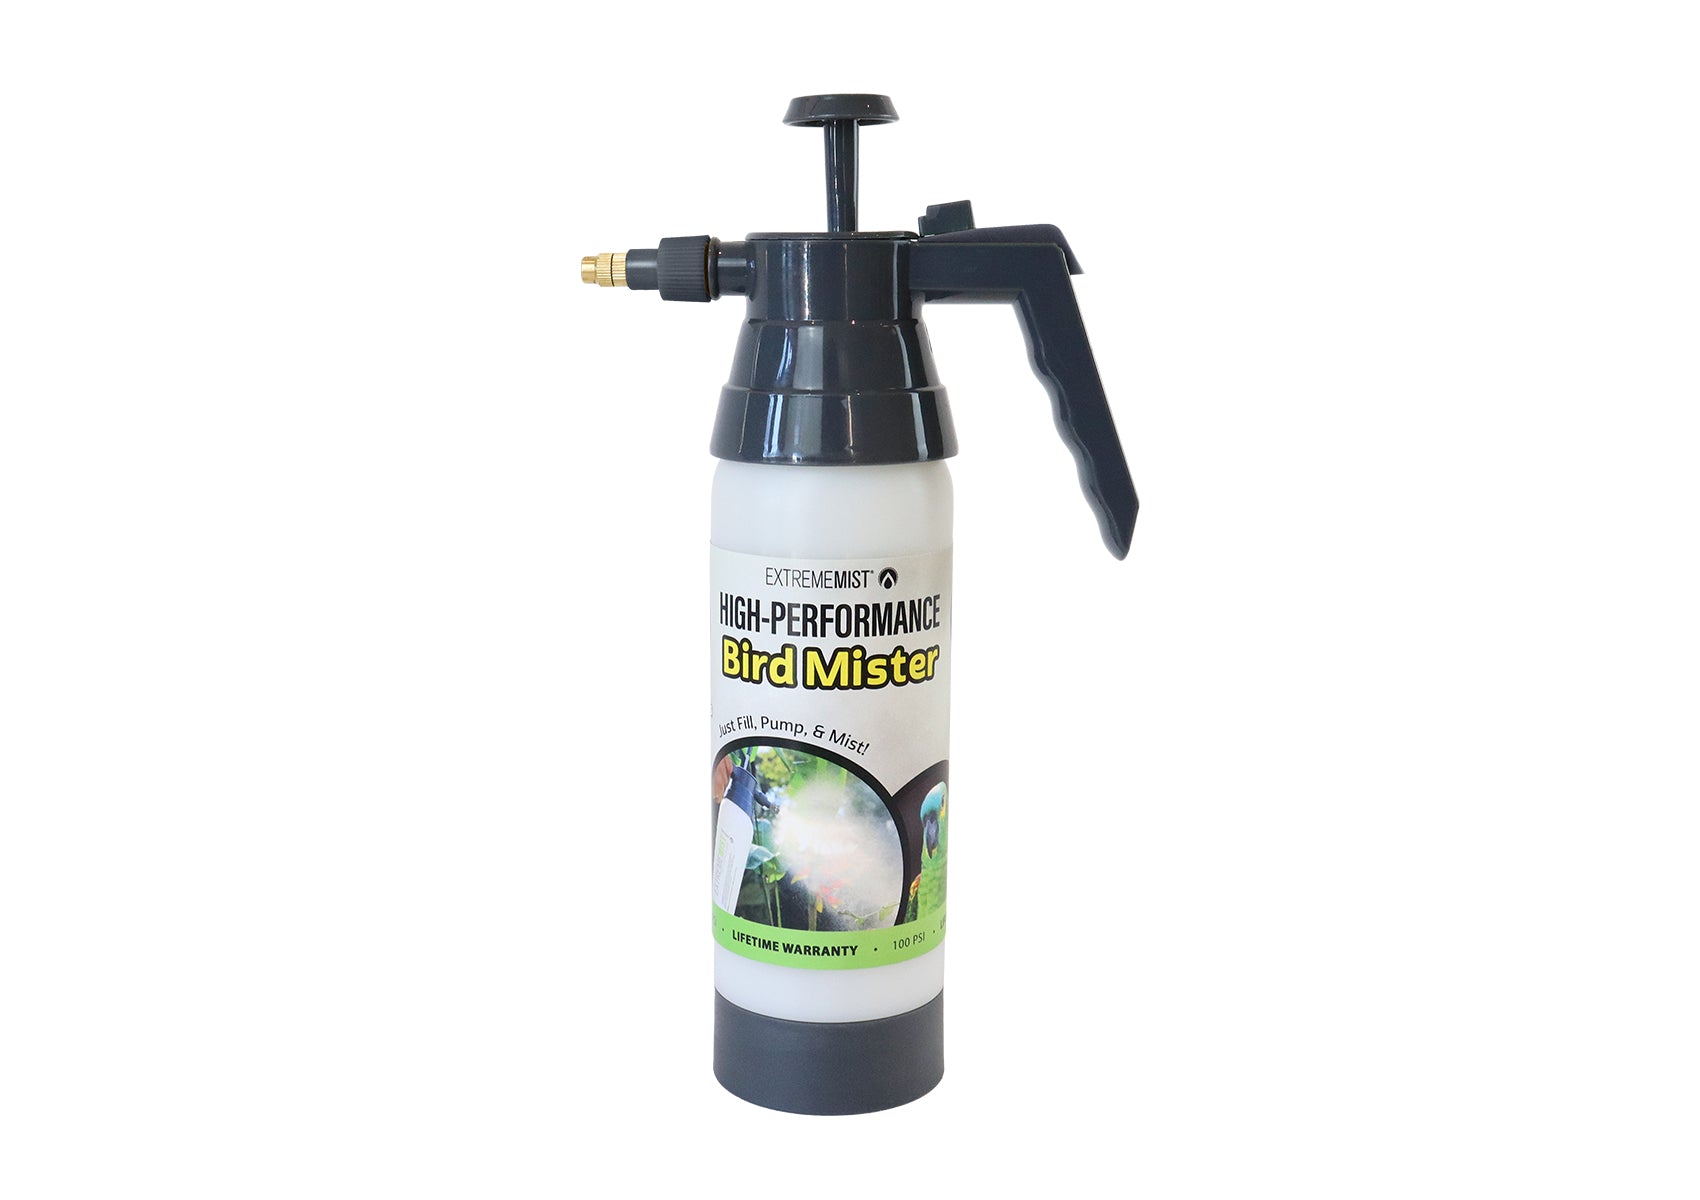 high performance sprayer pump-up bird mister